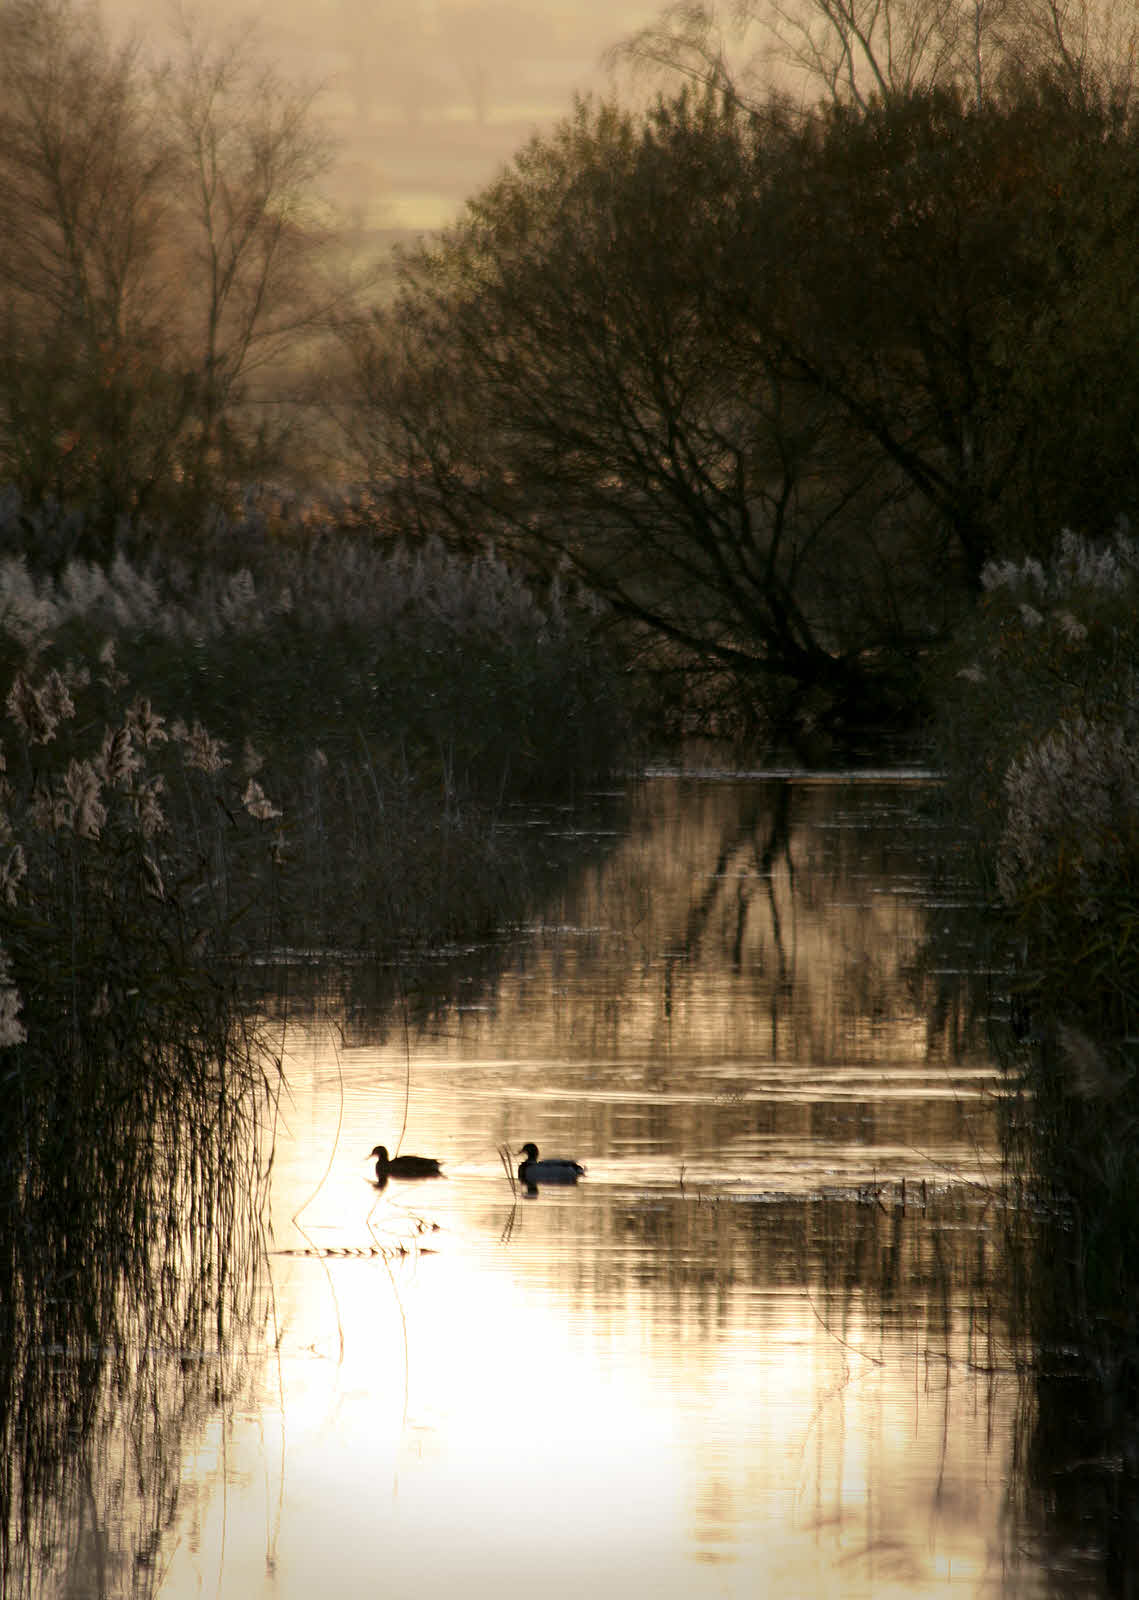 Ducks in sepia marsh